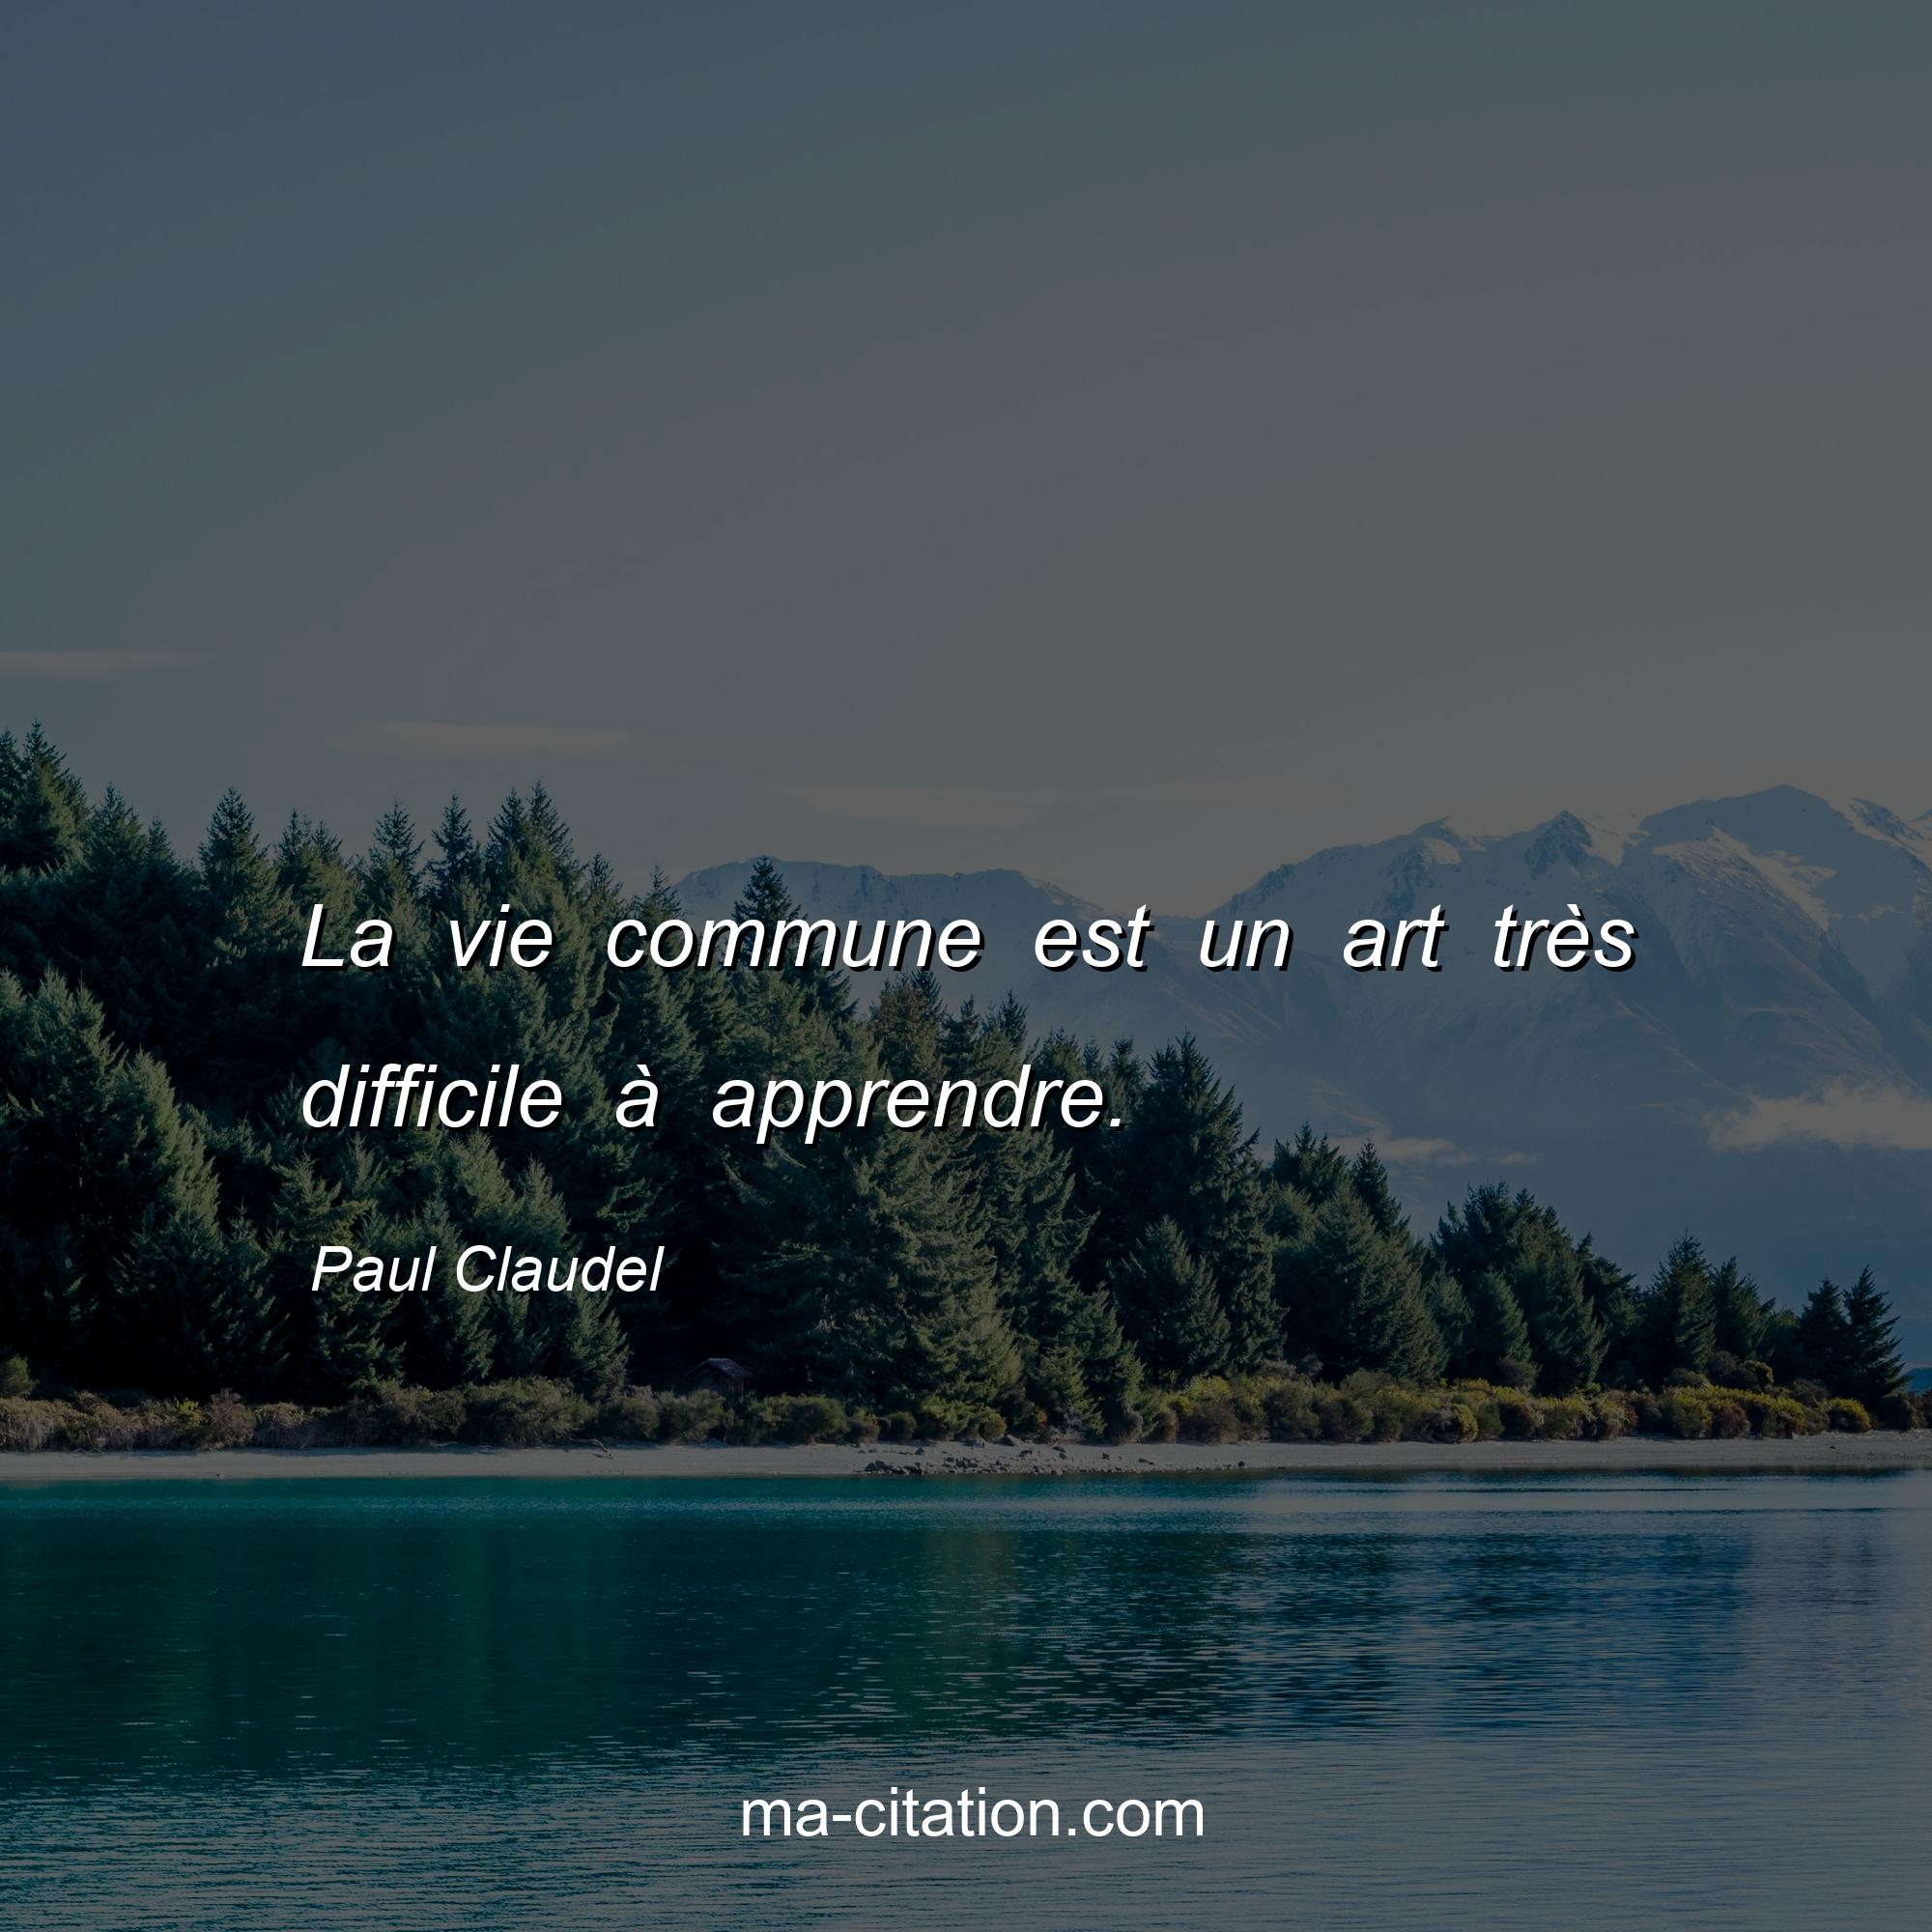 Paul Claudel : La vie commune est un art très difficile à apprendre.